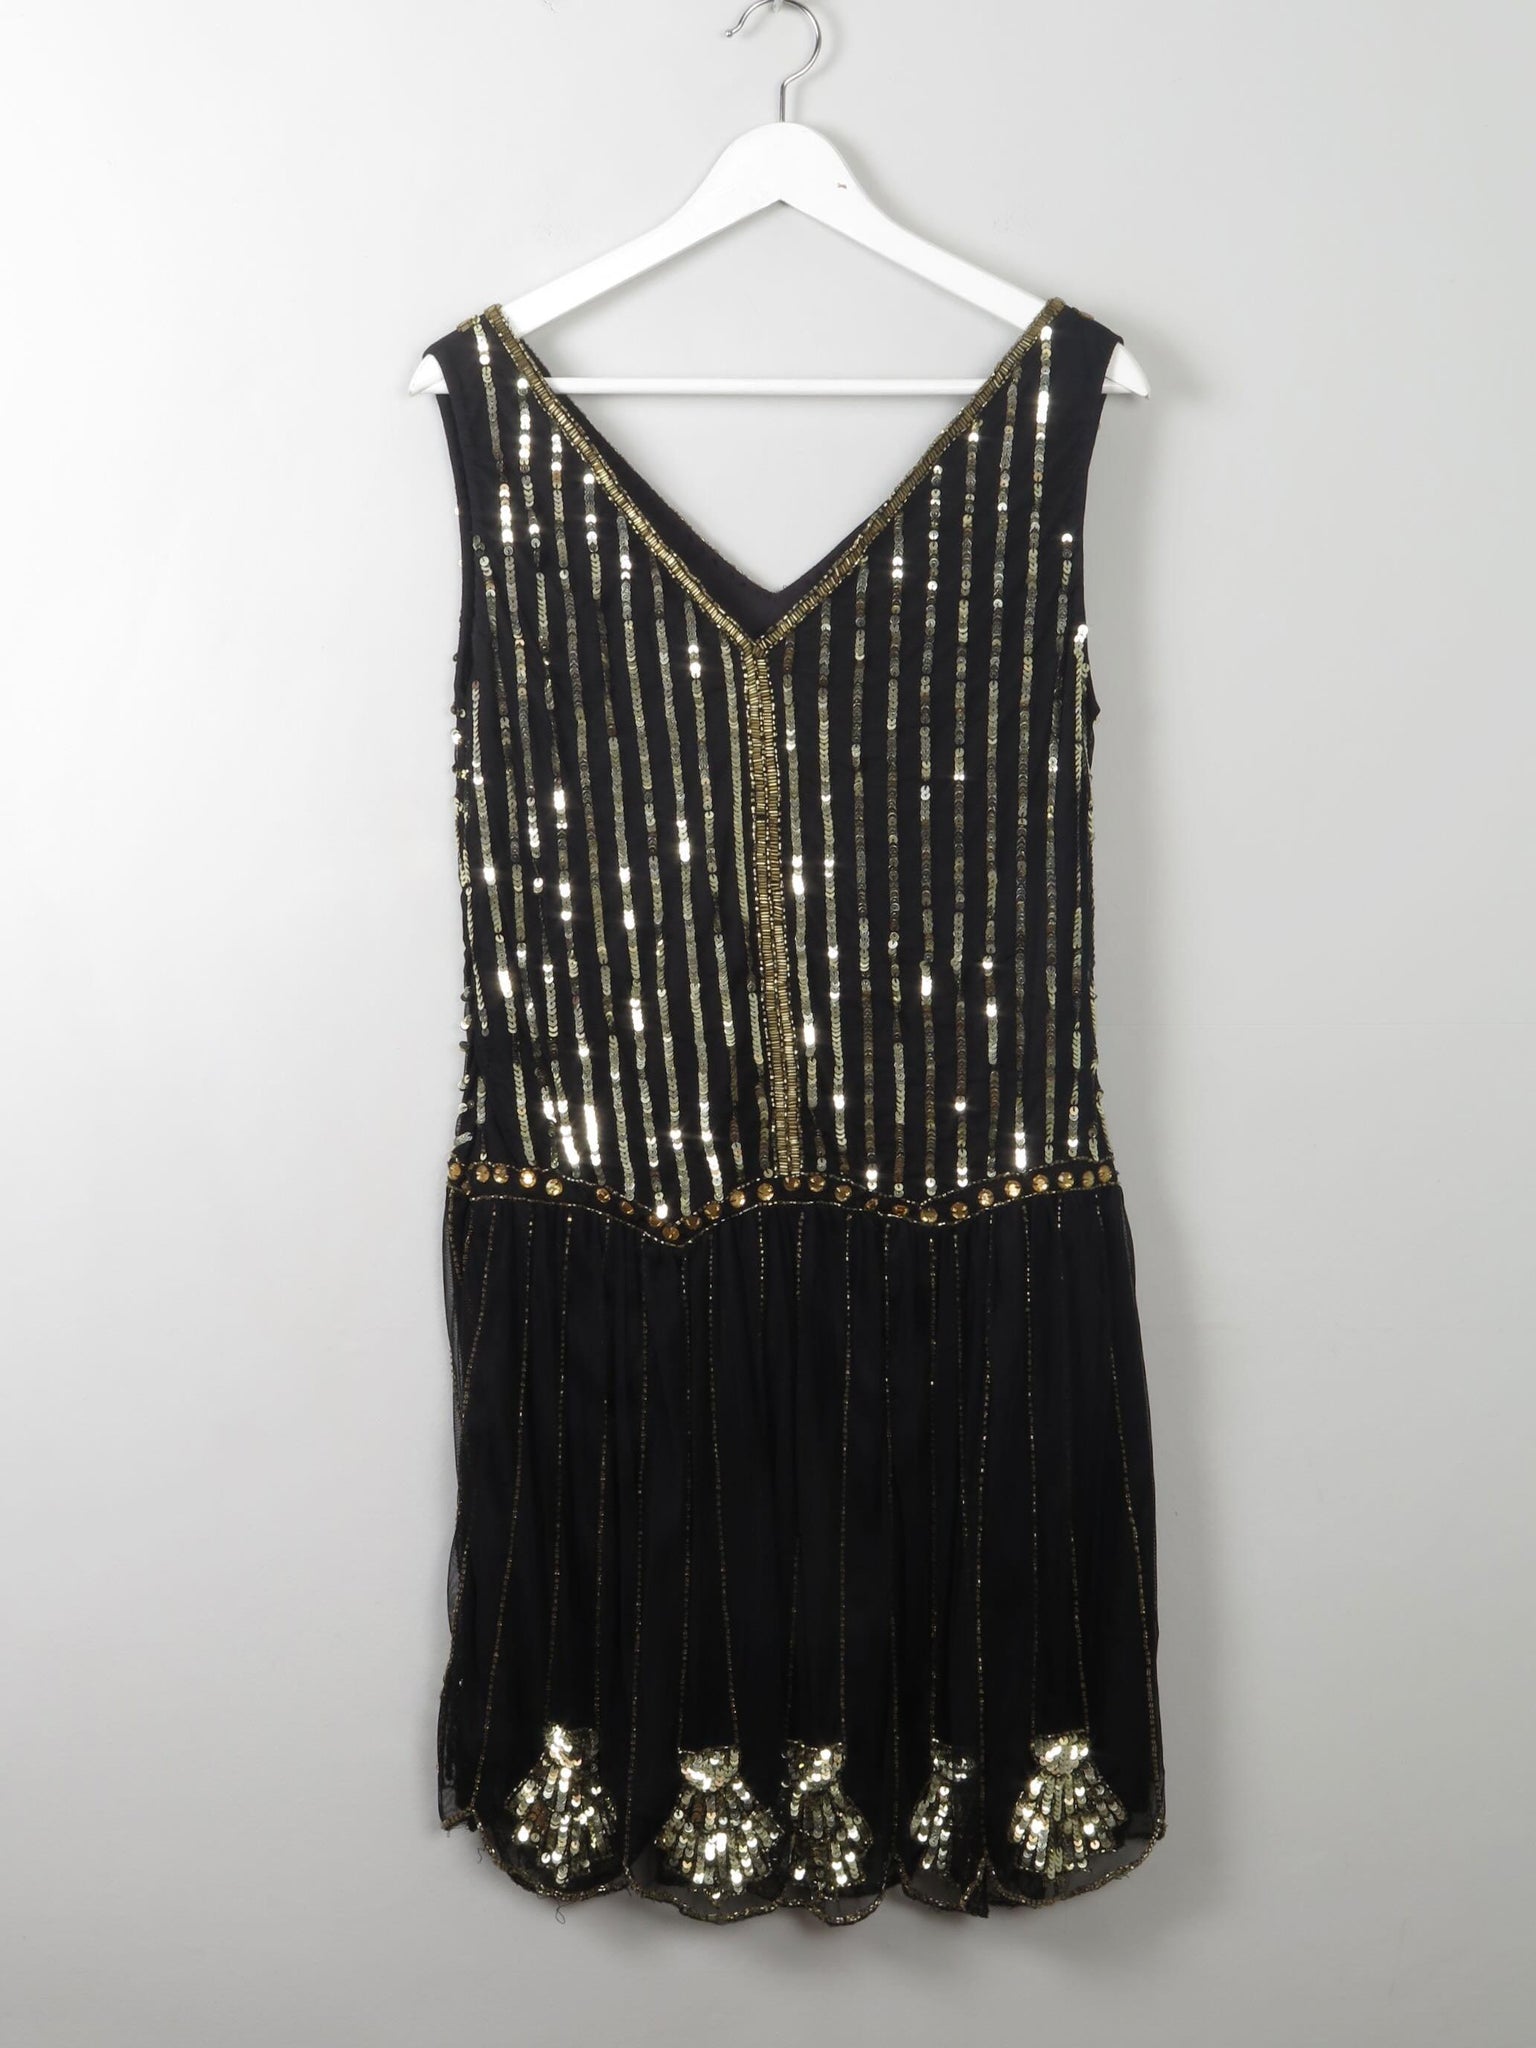 Black & Gold Vintage Style Flapper Dress 12 - The Harlequin